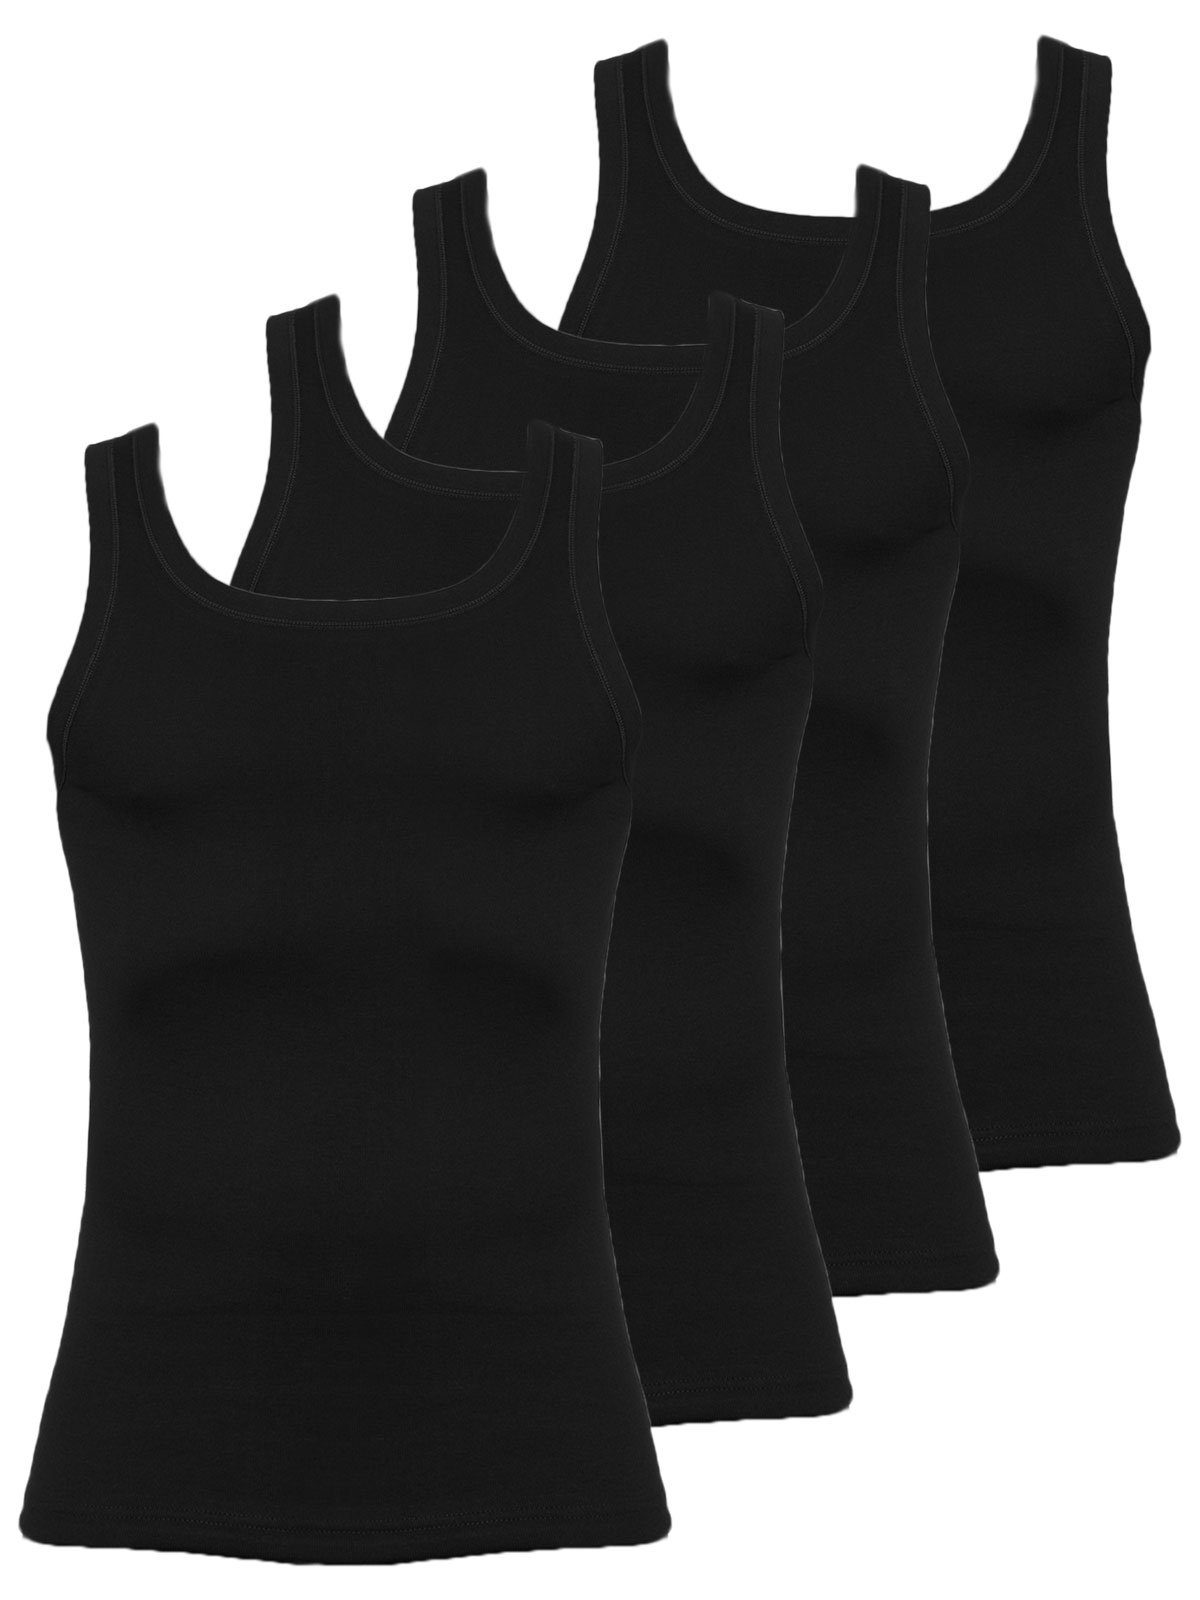 KUMPF Achselhemd 4er Sparpack Herren Unterhemd Feinripp (Spar-Set, 4-St) hohe Markenqualität schwarz